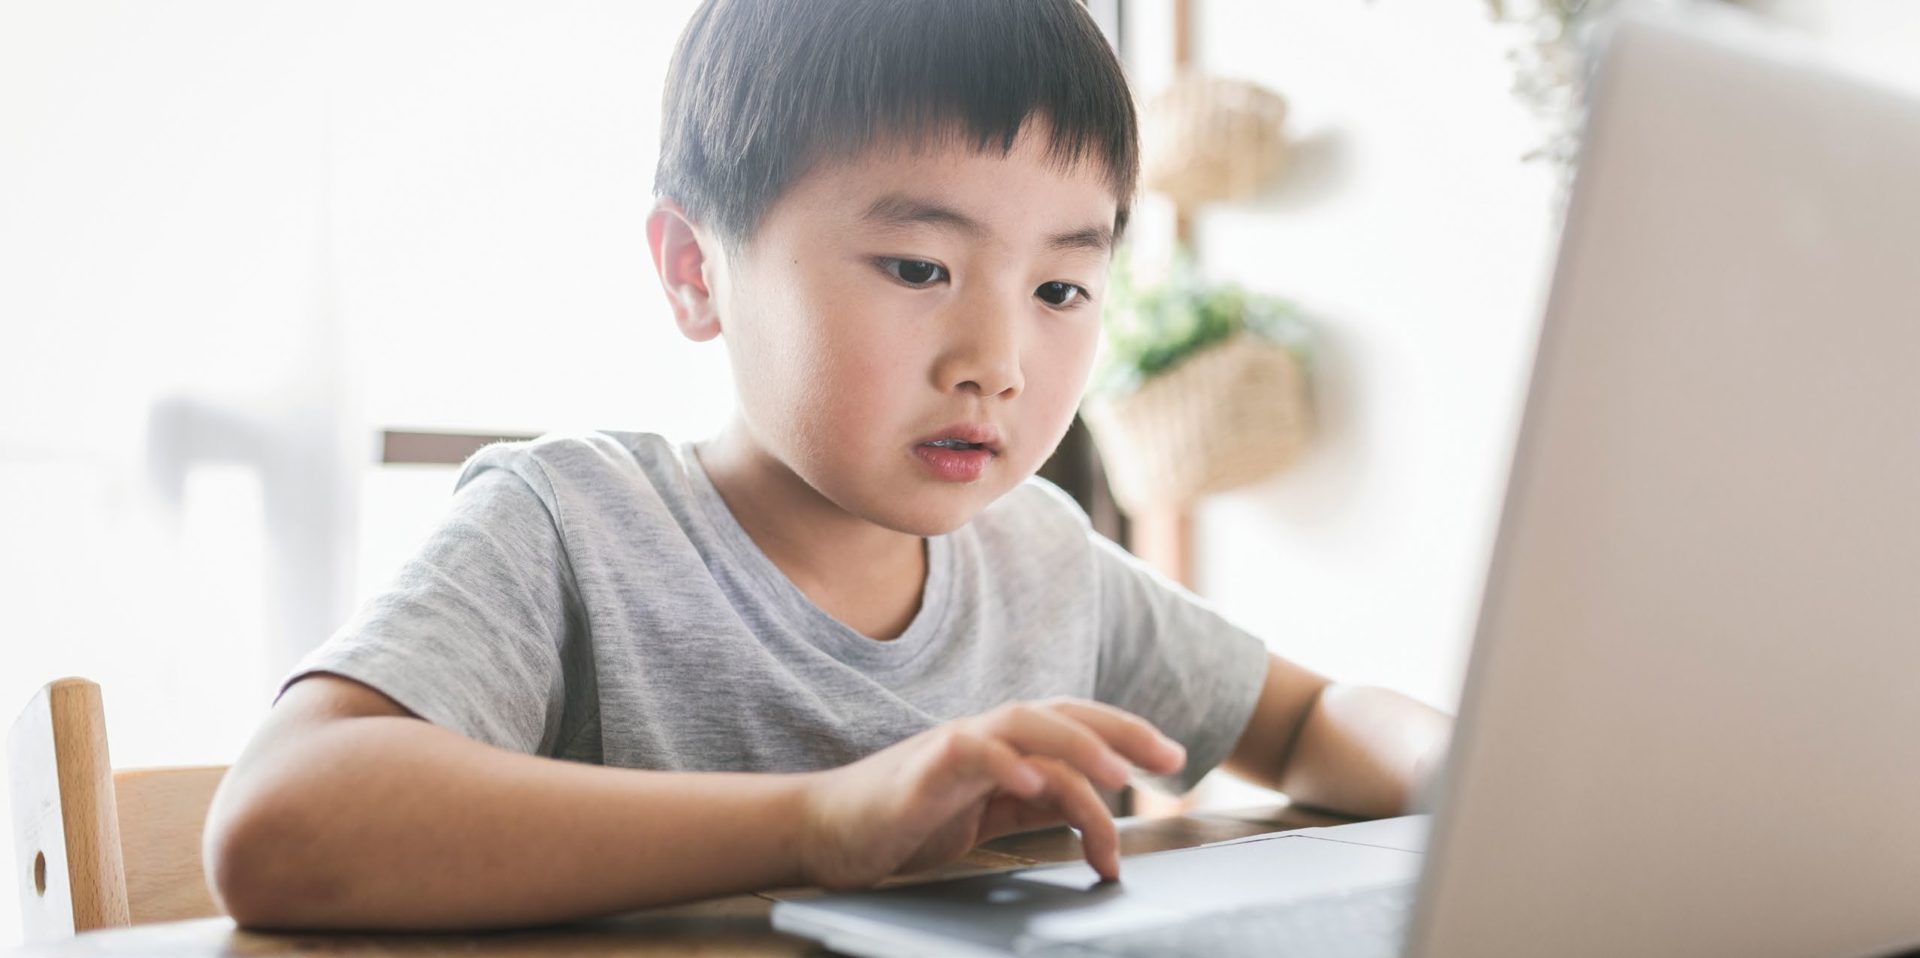 Niño pequeño pulsando una tecla en un ordenador portátil frente a él